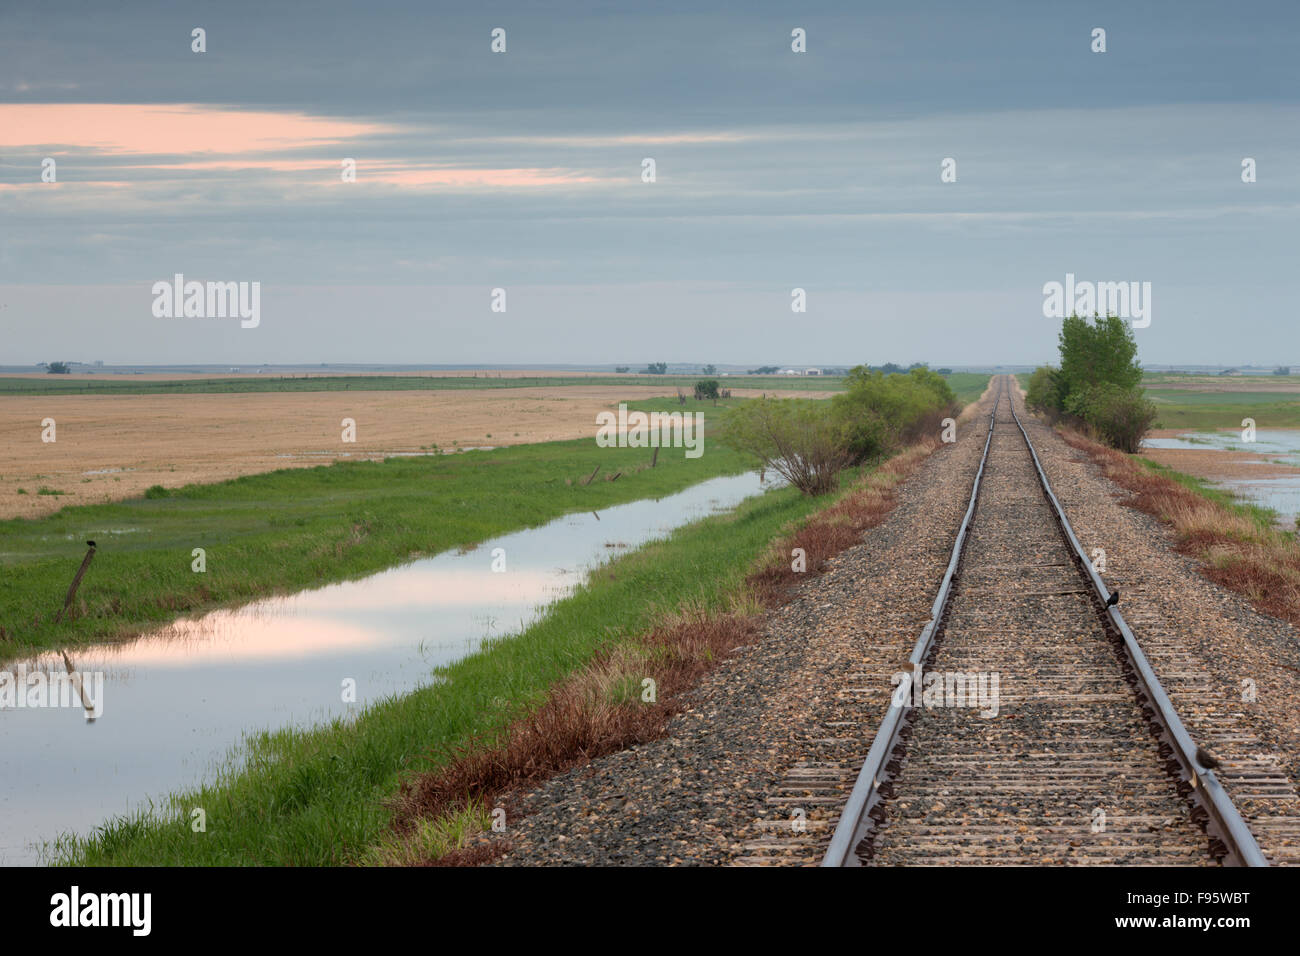 Railroad and cropland near Leader, Saskatchewan, Canada Stock Photo